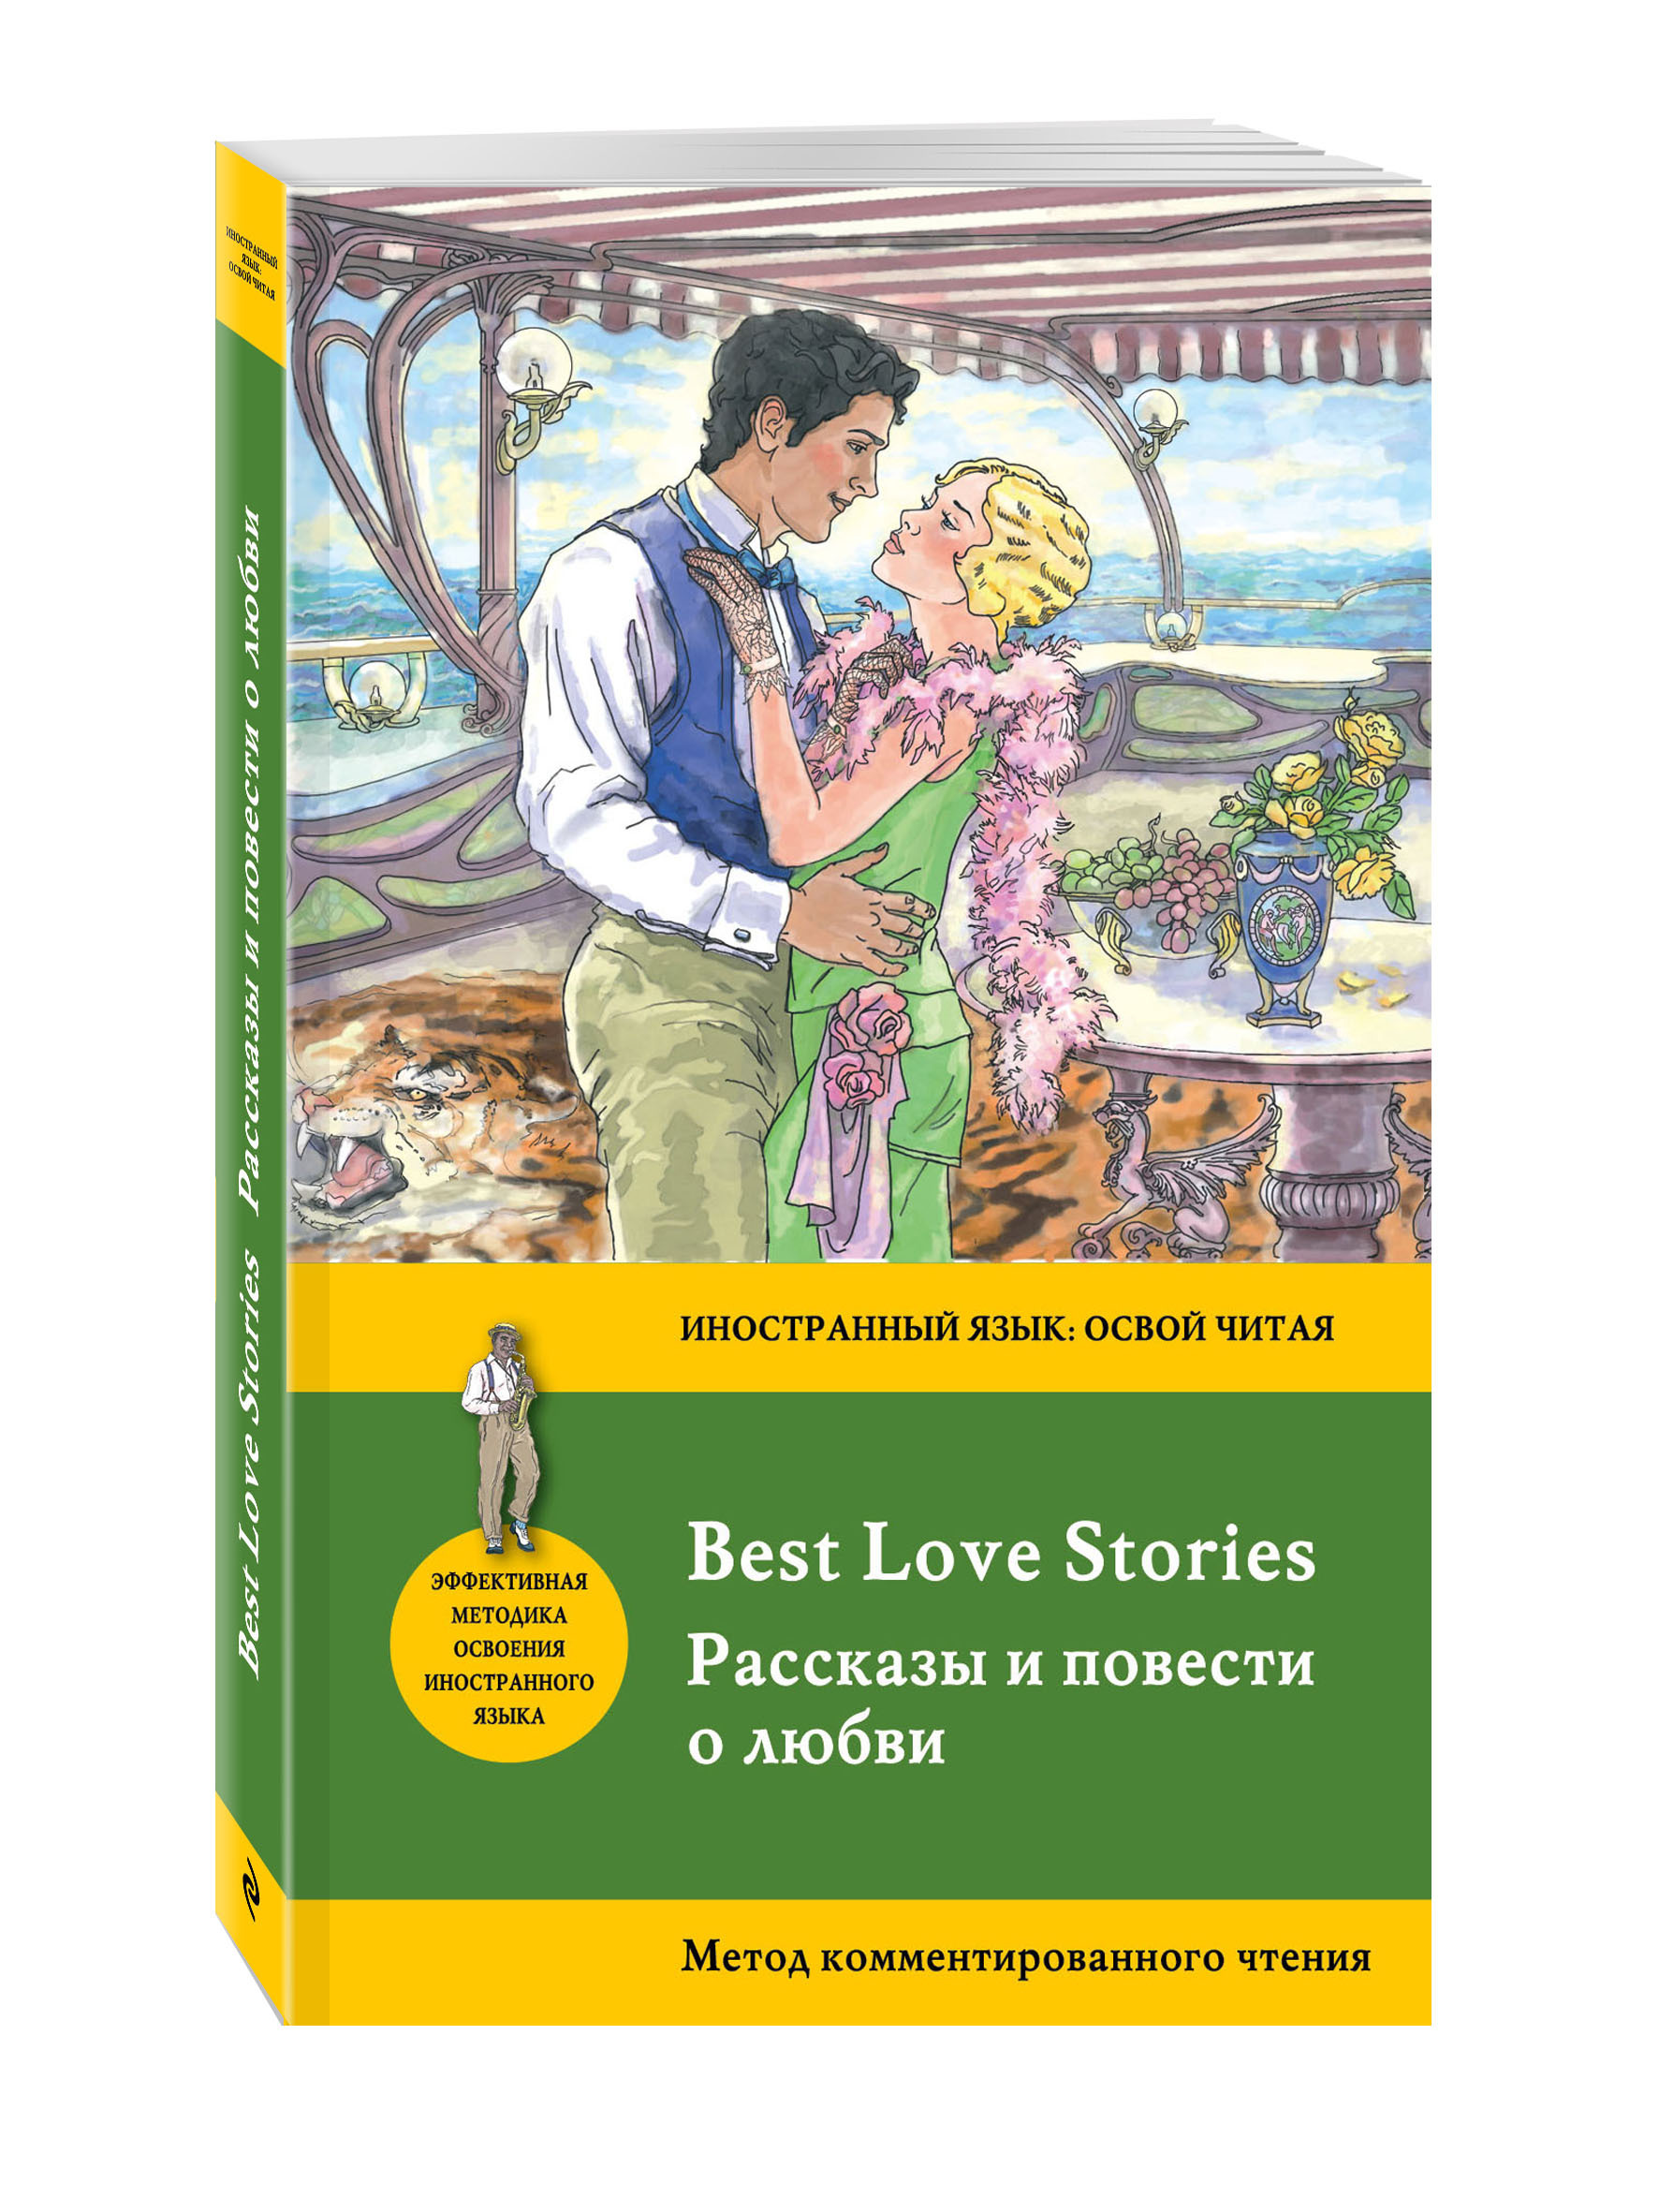 Реальные рассказы и истории любви